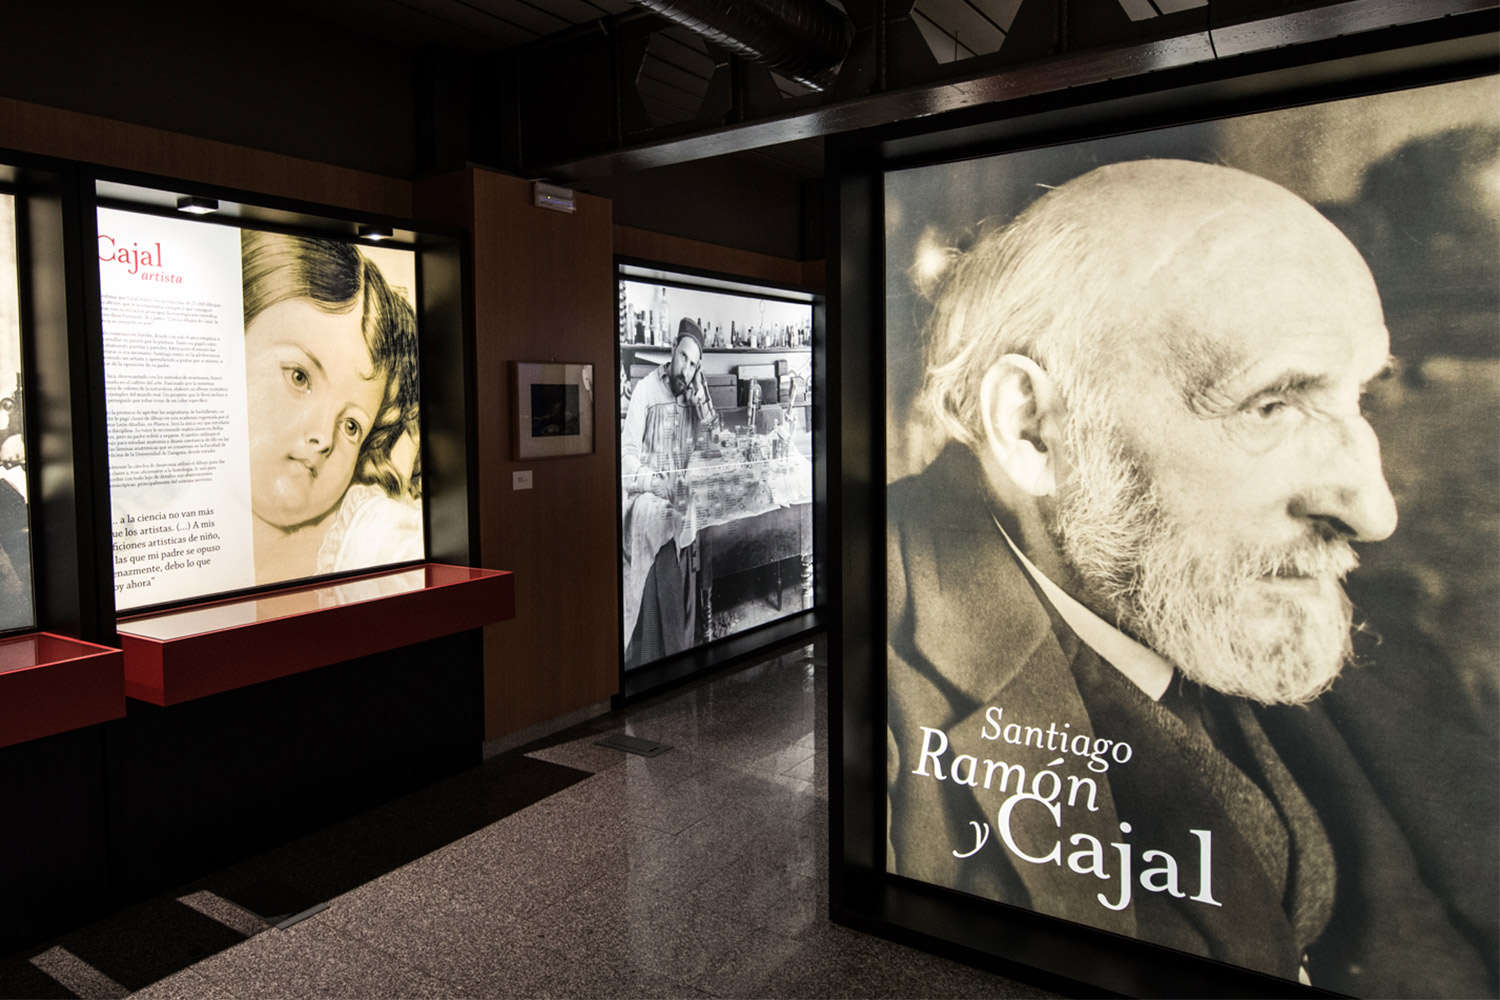 Santiago Ramón y Cajal, the exhibition